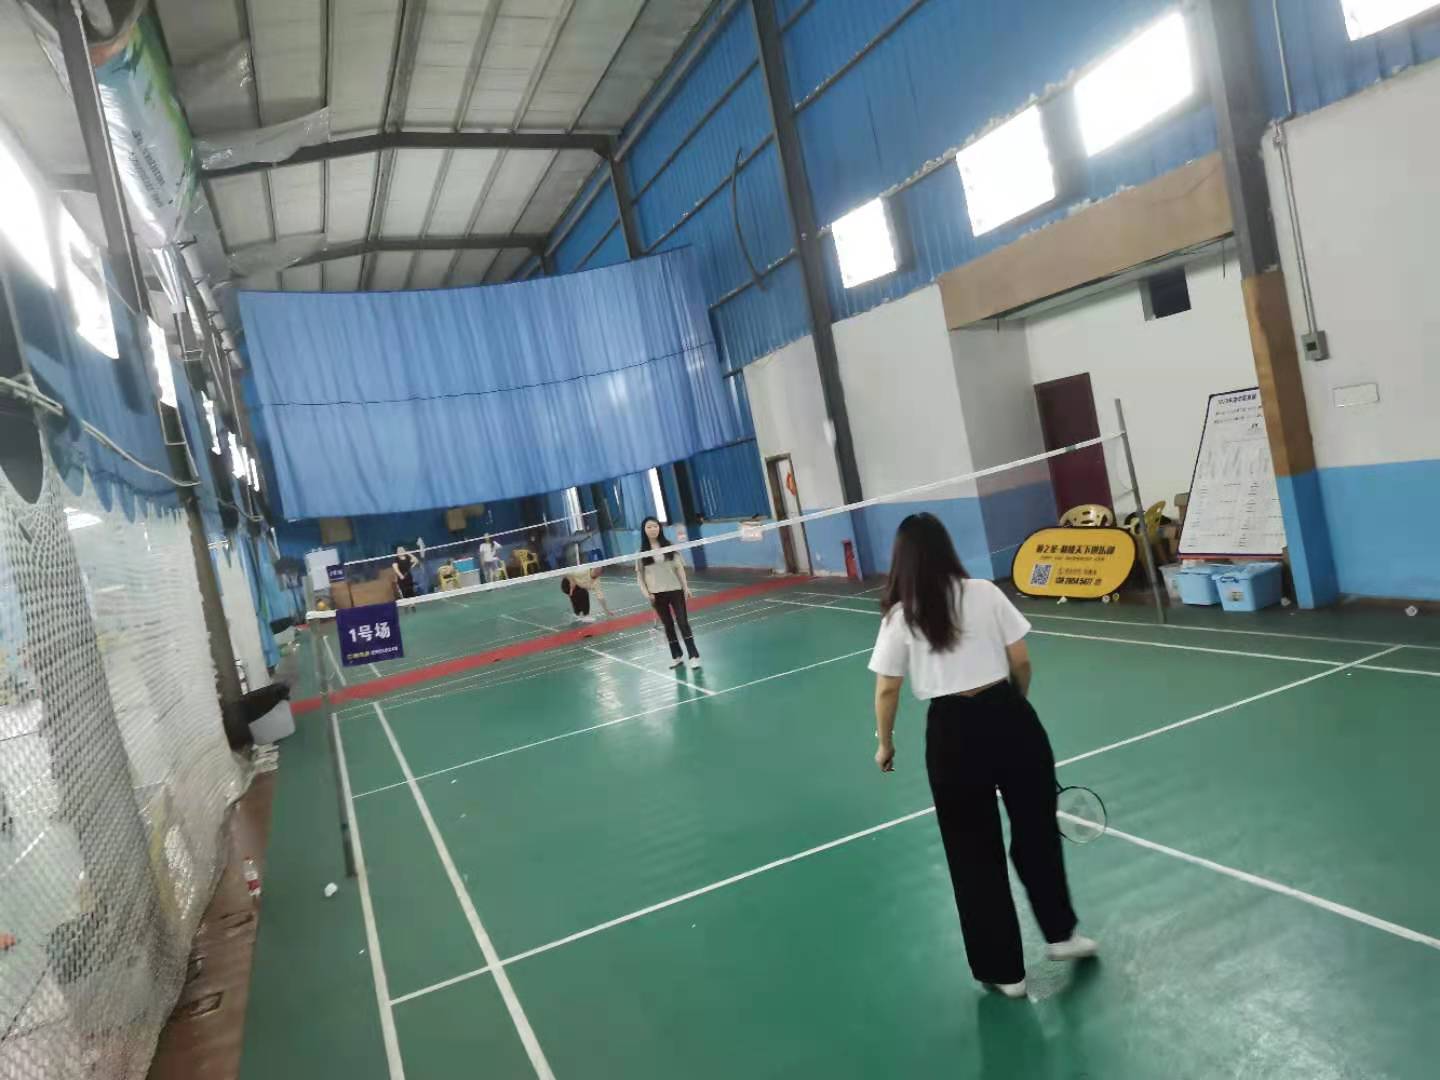 Bigas aedificium Badminton competition